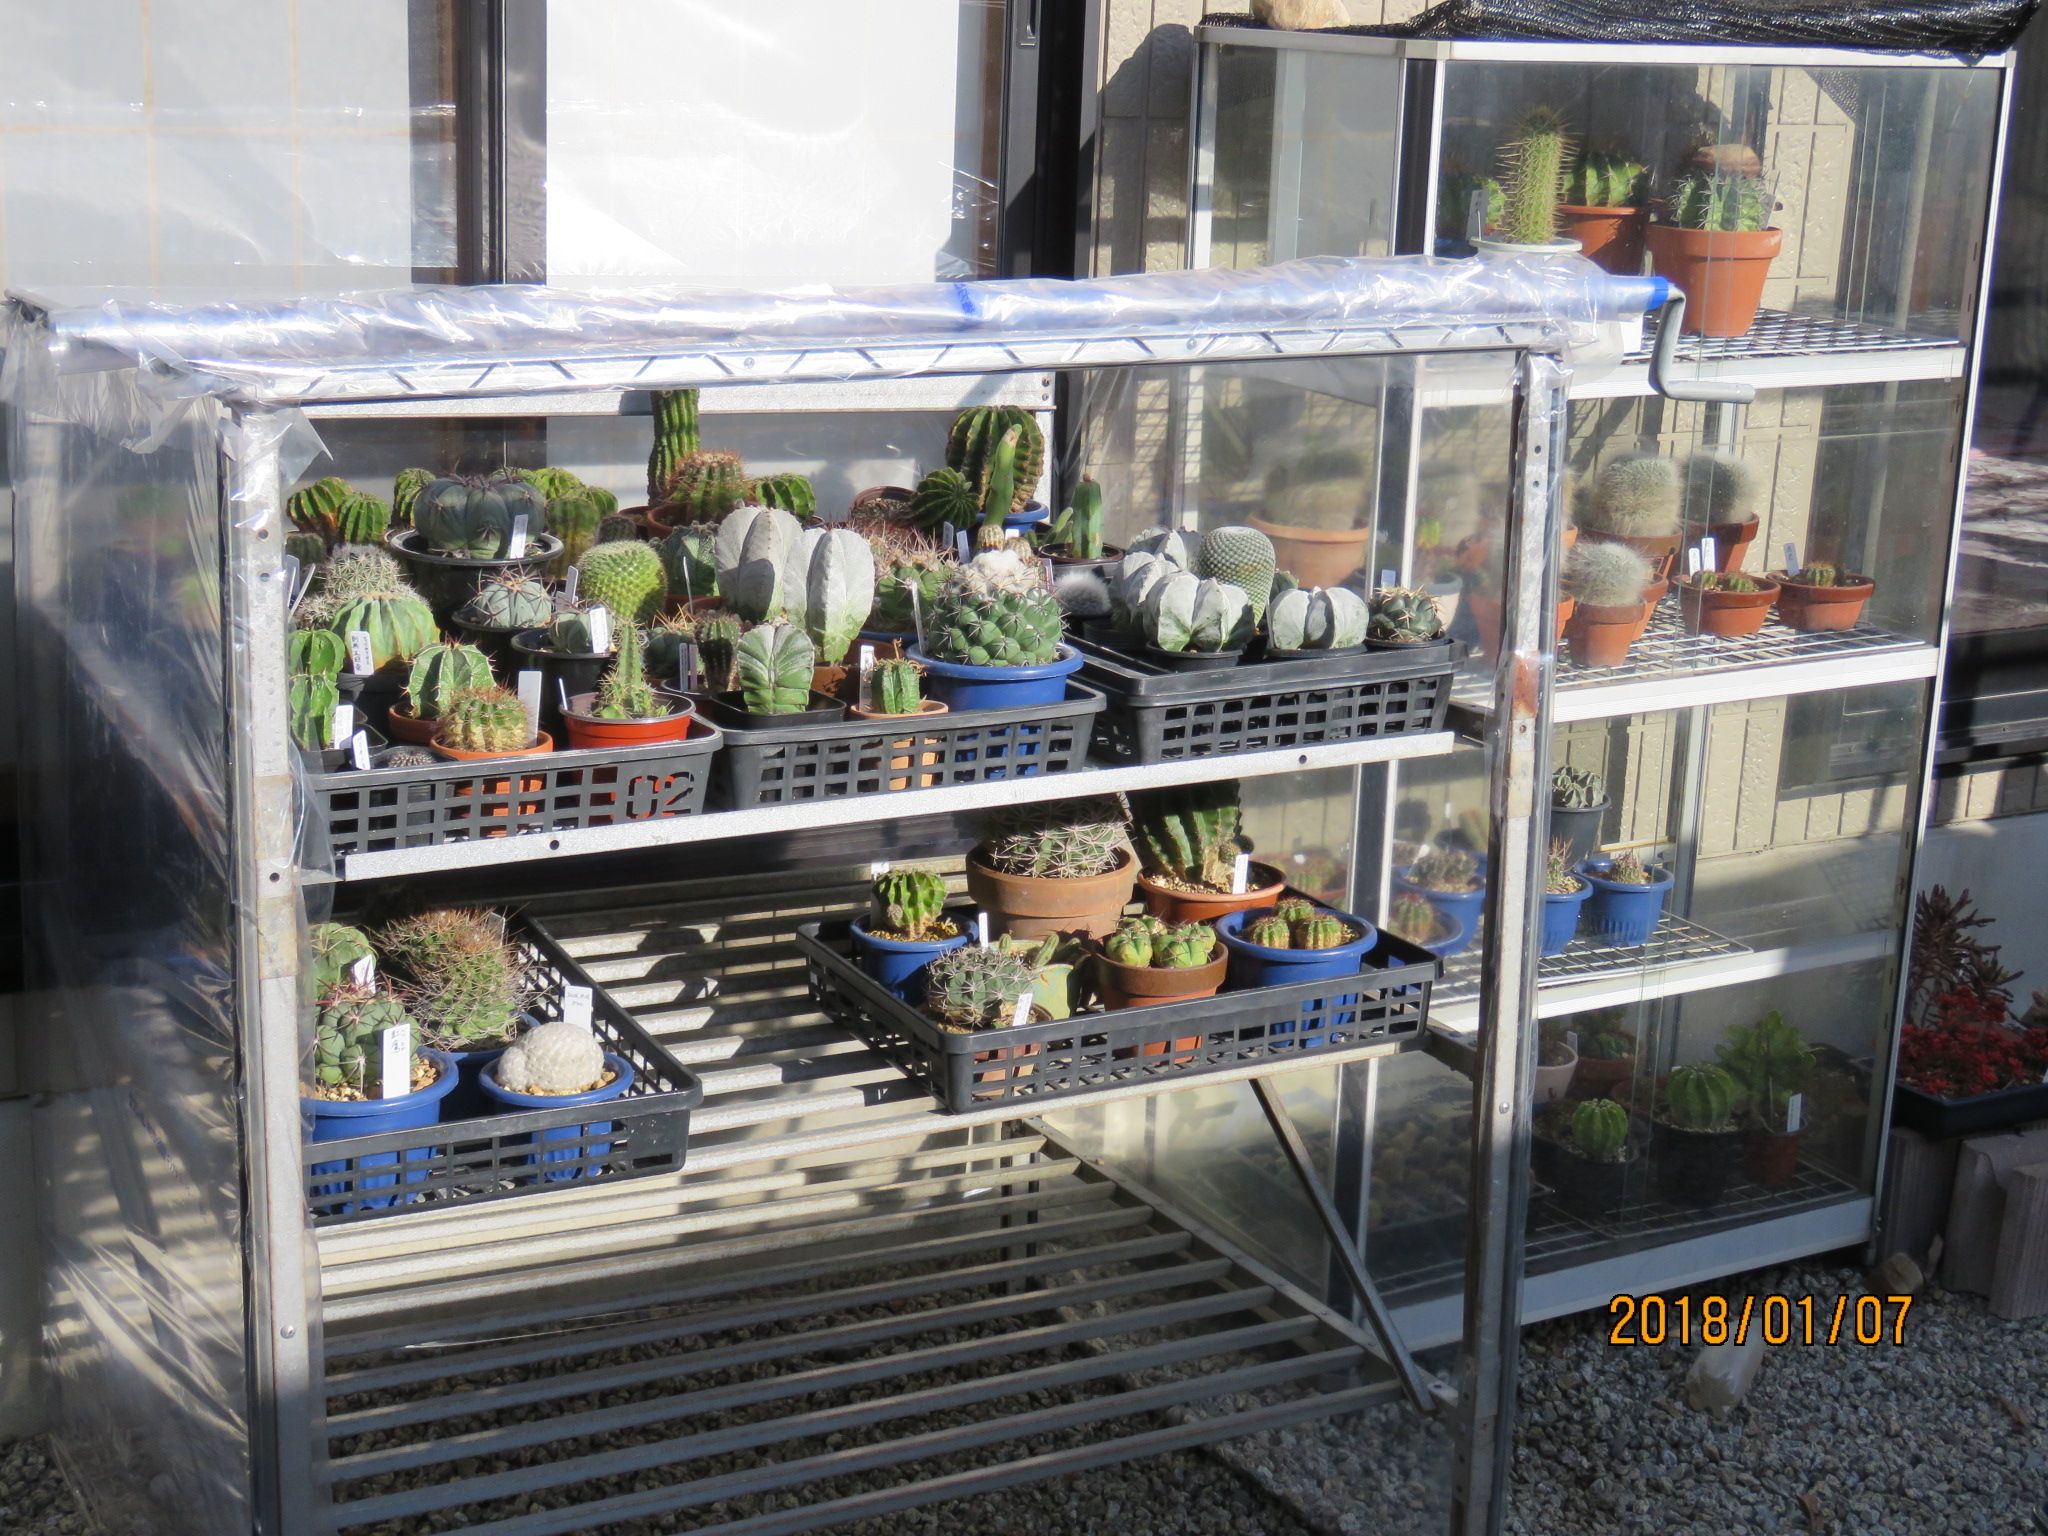 サボテン達の新しい温室に引っ越し びびるタニサボ達 楽天ブログ